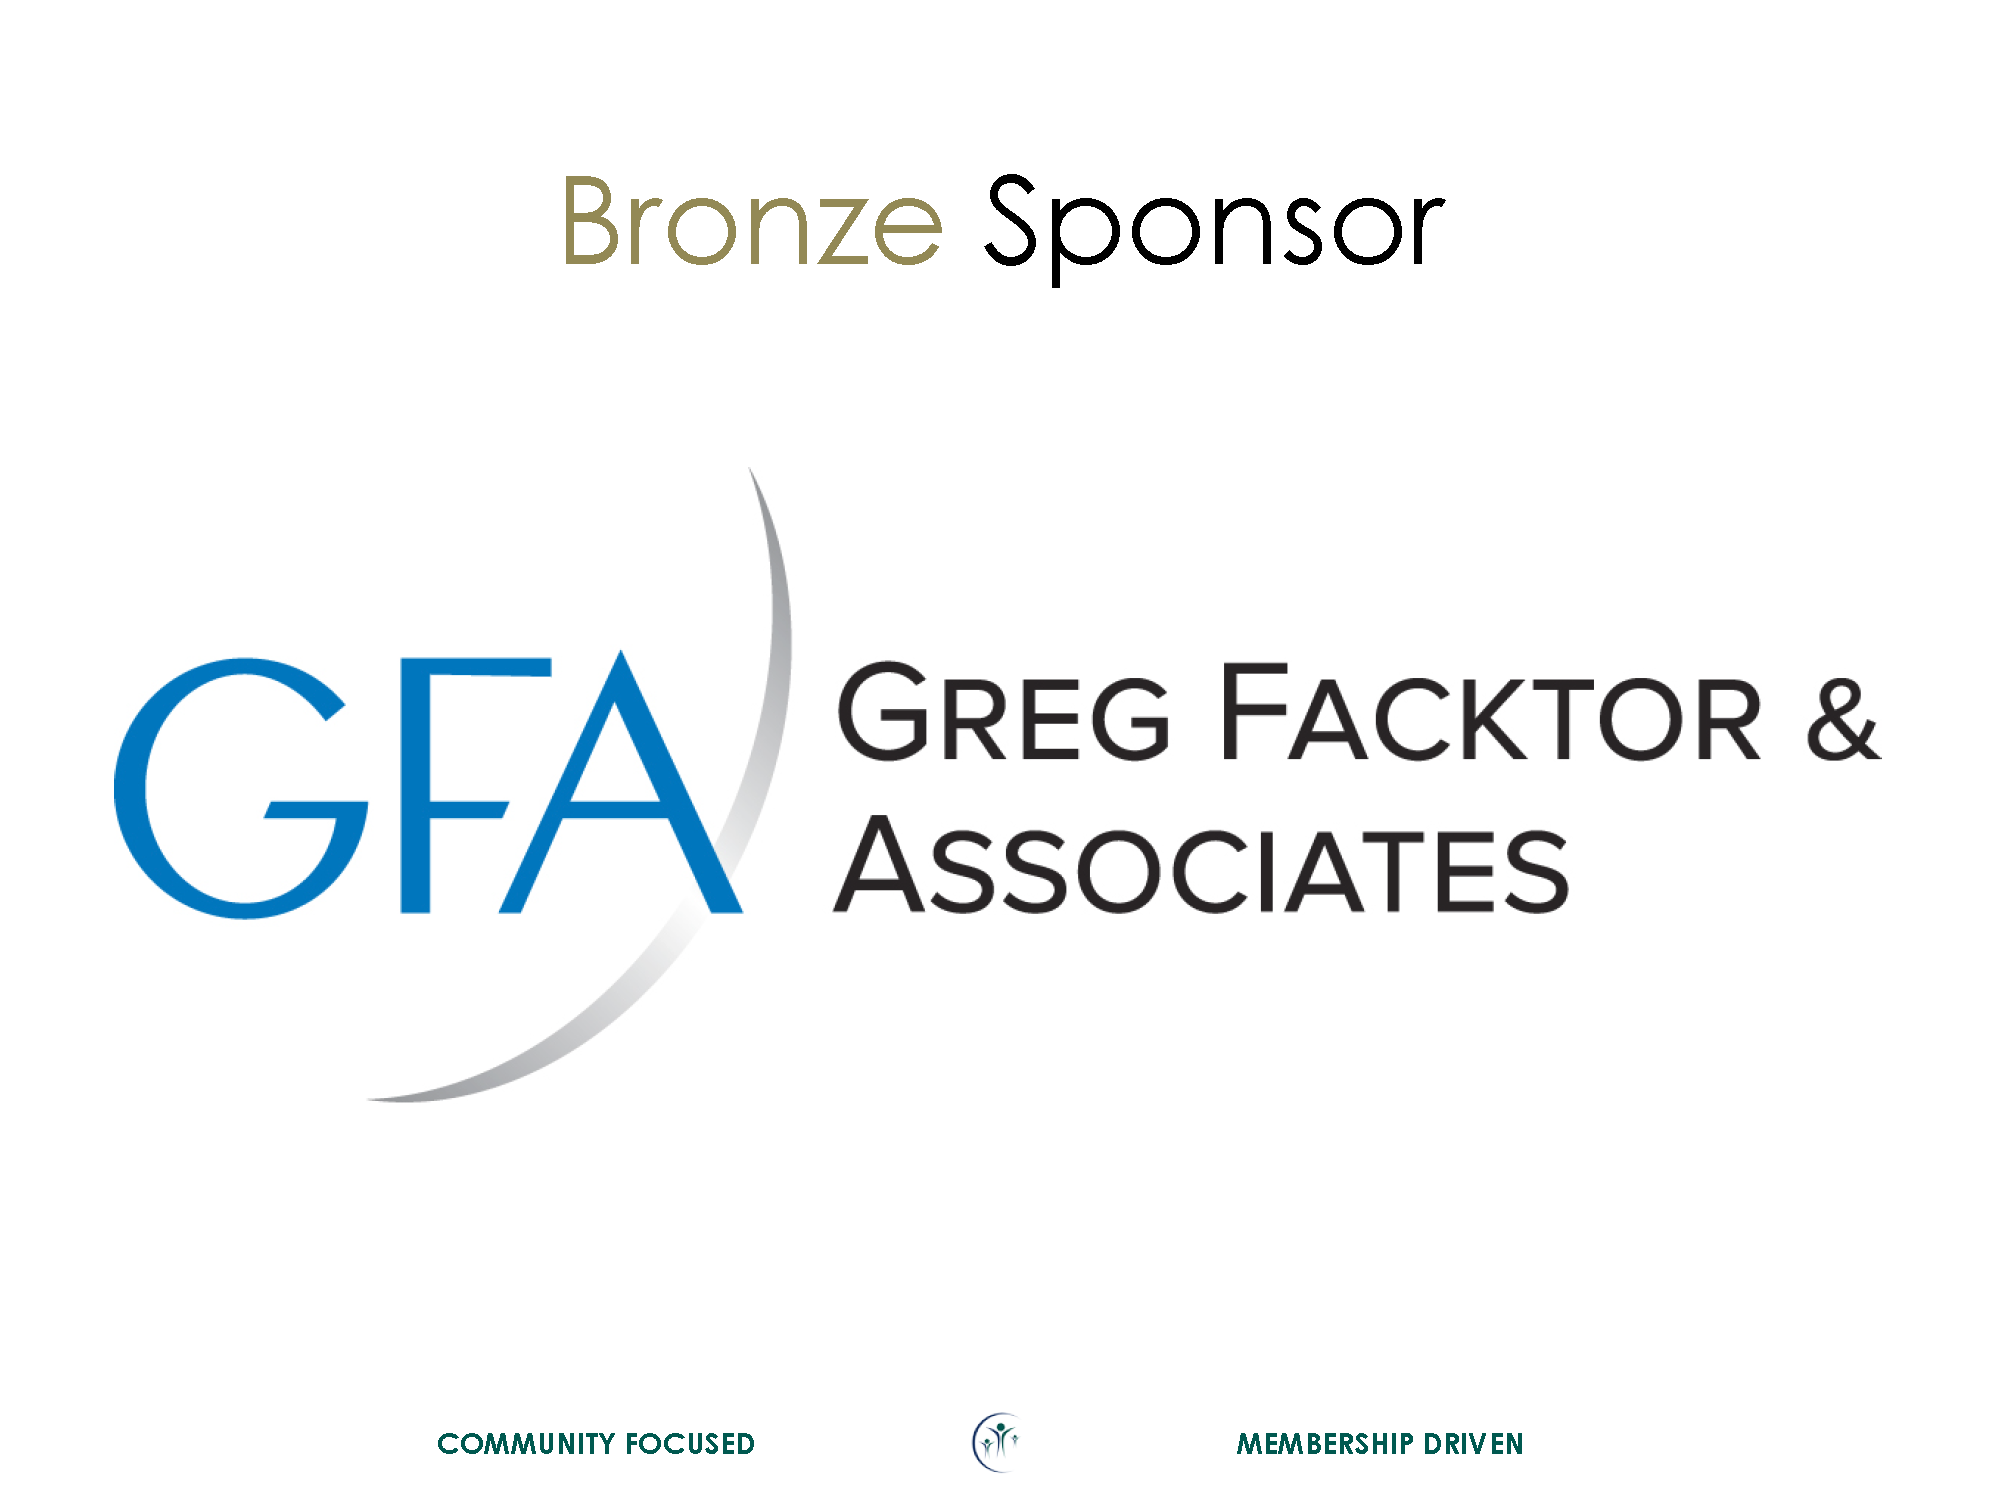 GFA Bronze Sponsor